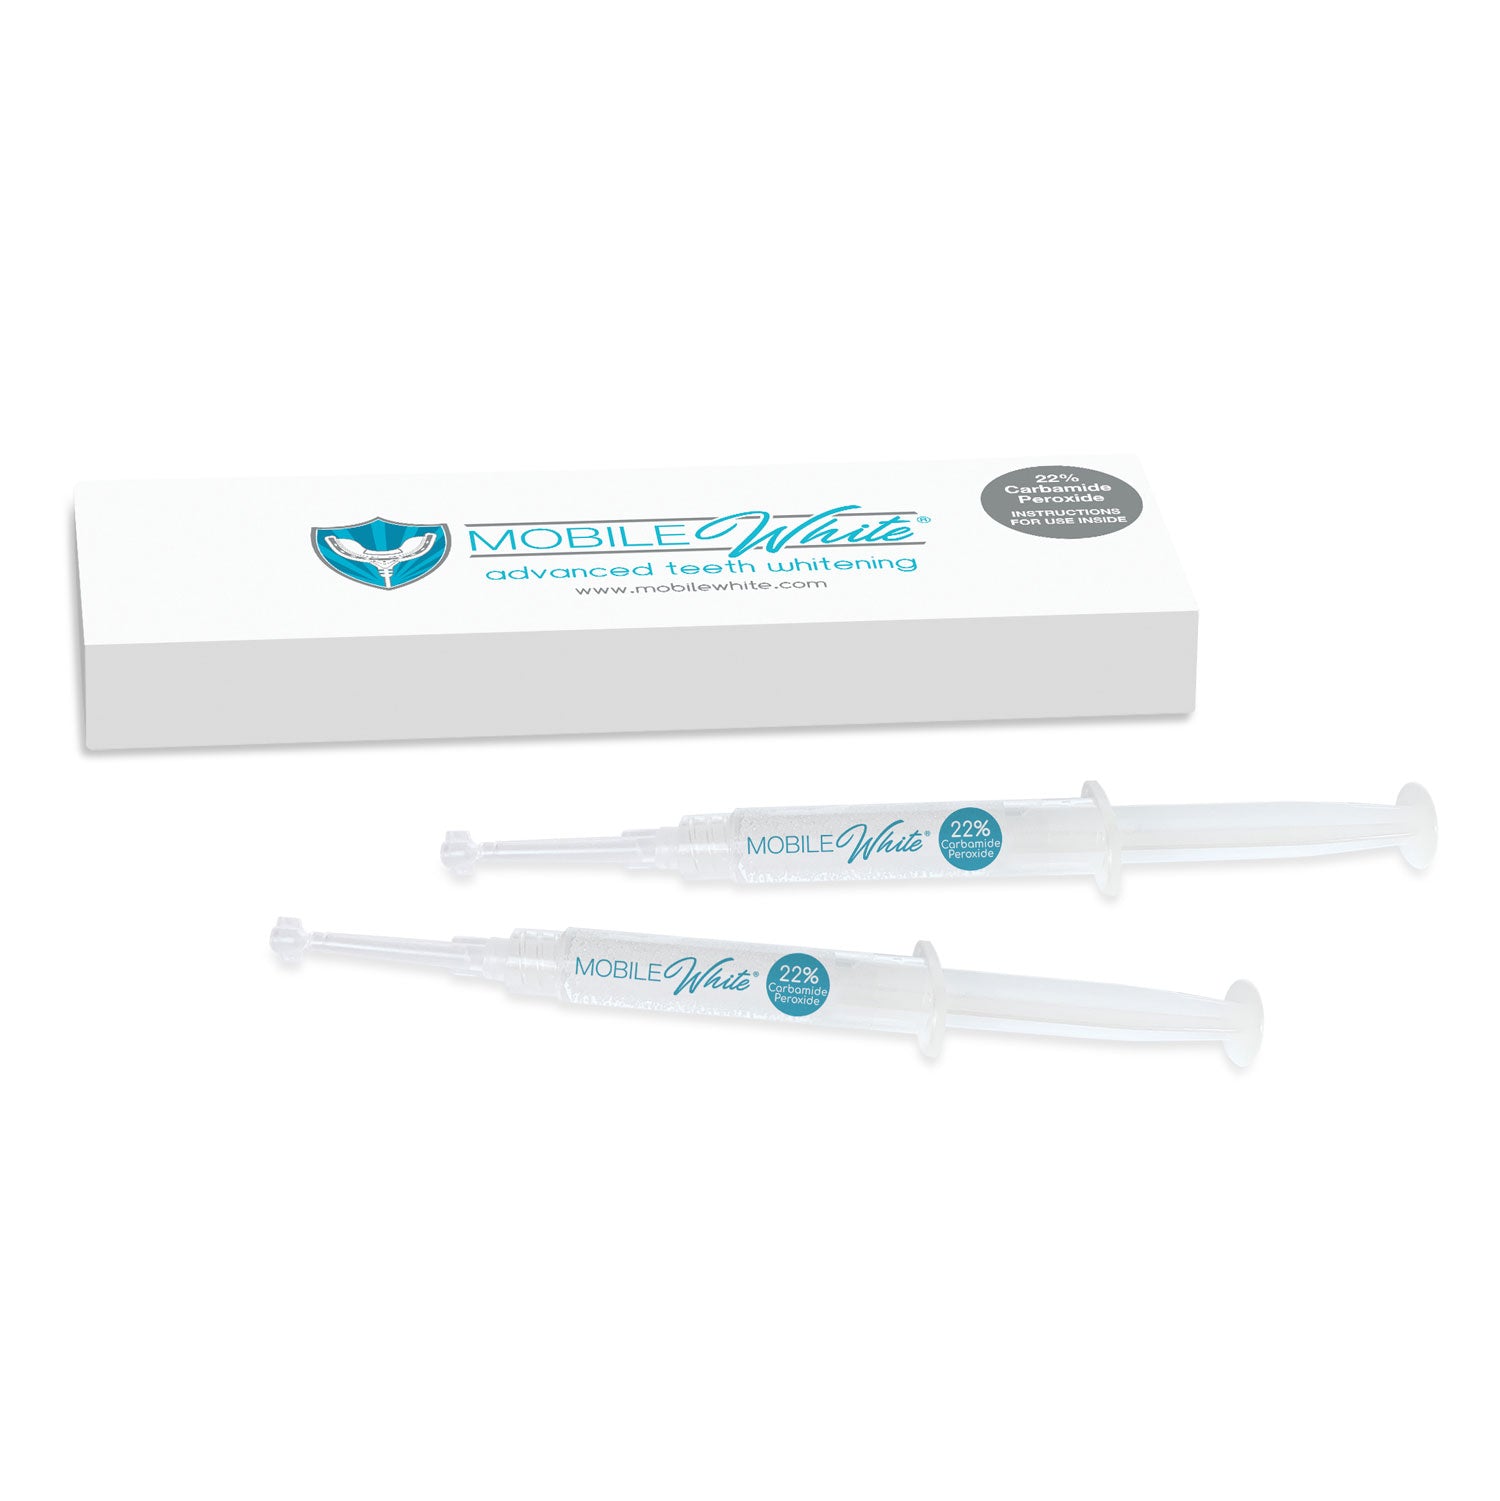 Mobile White 22% Whitening Gel Refill Kit - Set of 2 Syringes